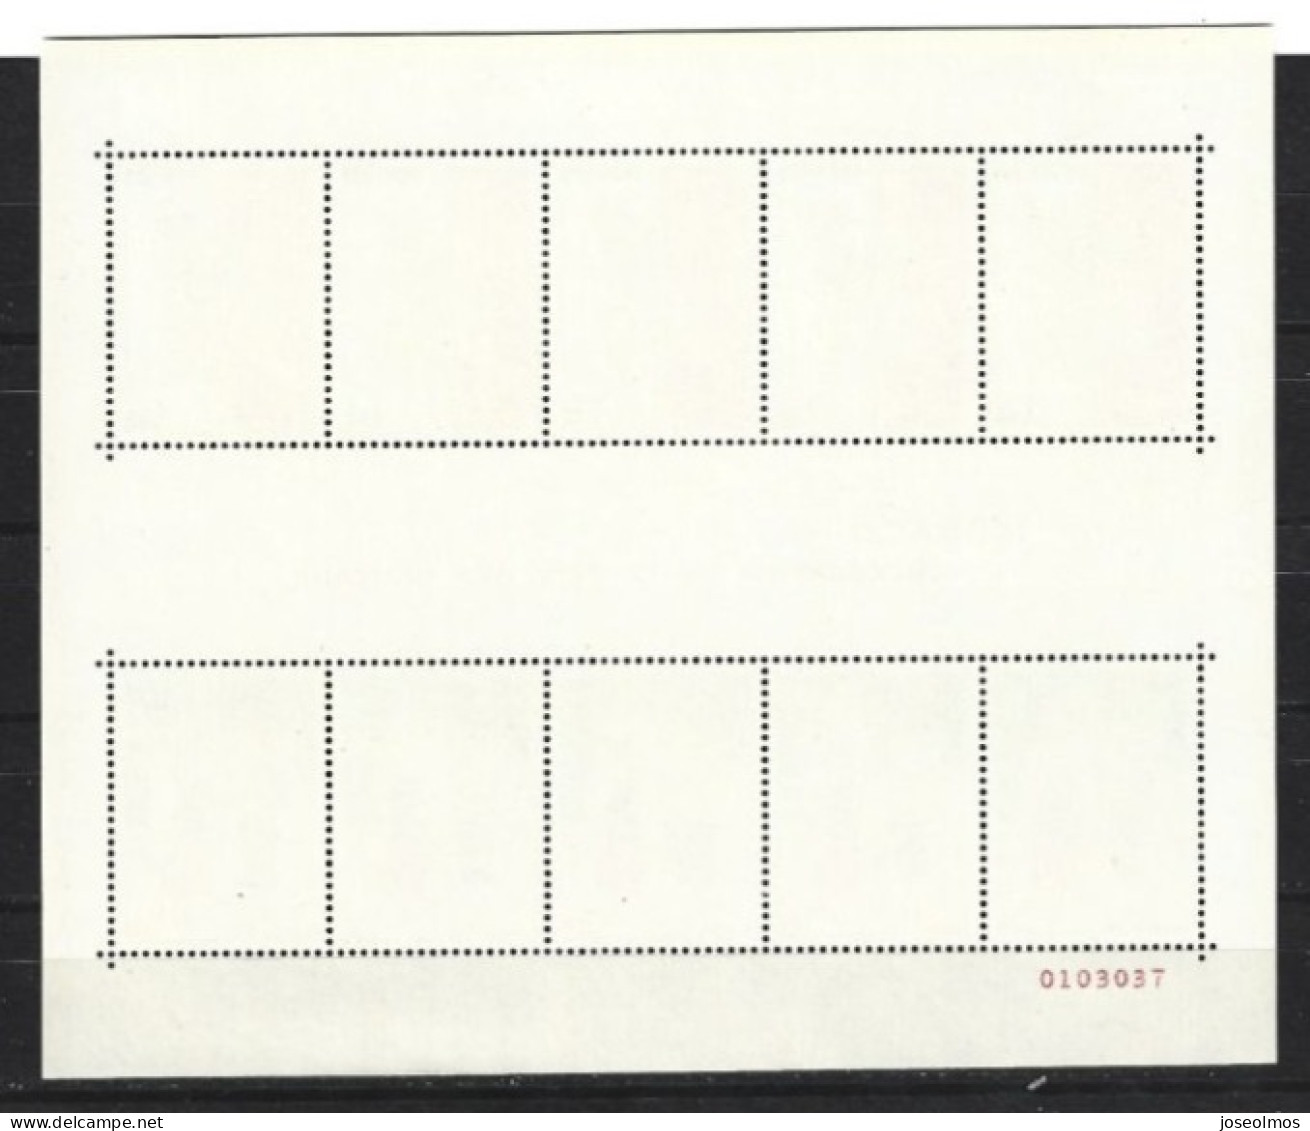 MONACO ANNEE COMPLETE 1981 NEUF** MNH +4 PREOS + 1 BLOC - Annate Complete